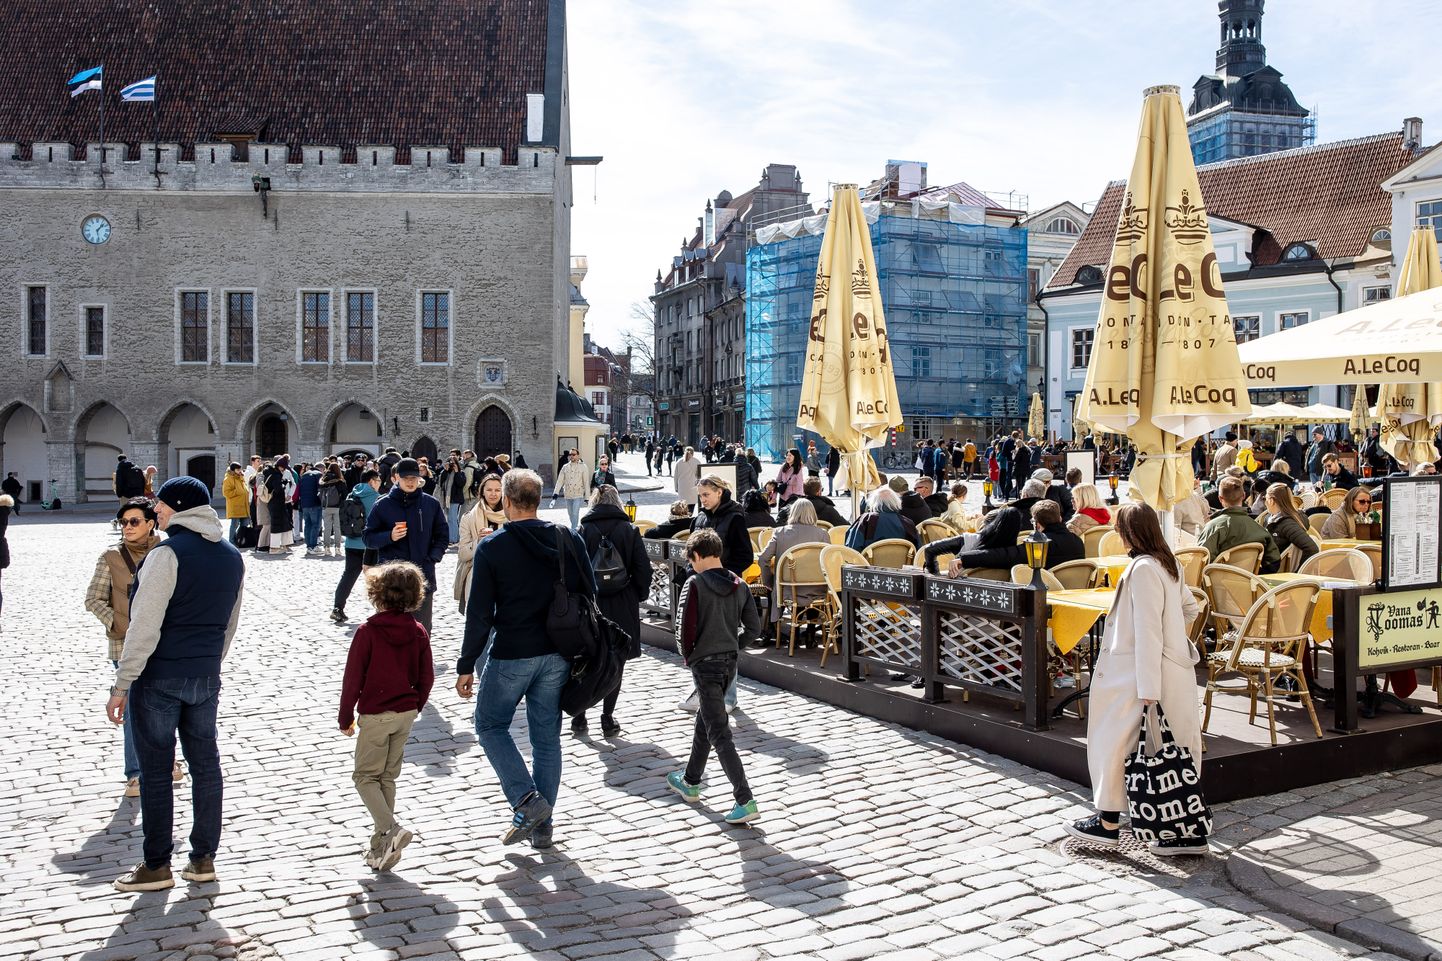 Lihavõtte nädalavahetus Tallinnas rõõmustas turismiettevõtjaid klientide rohkusega.